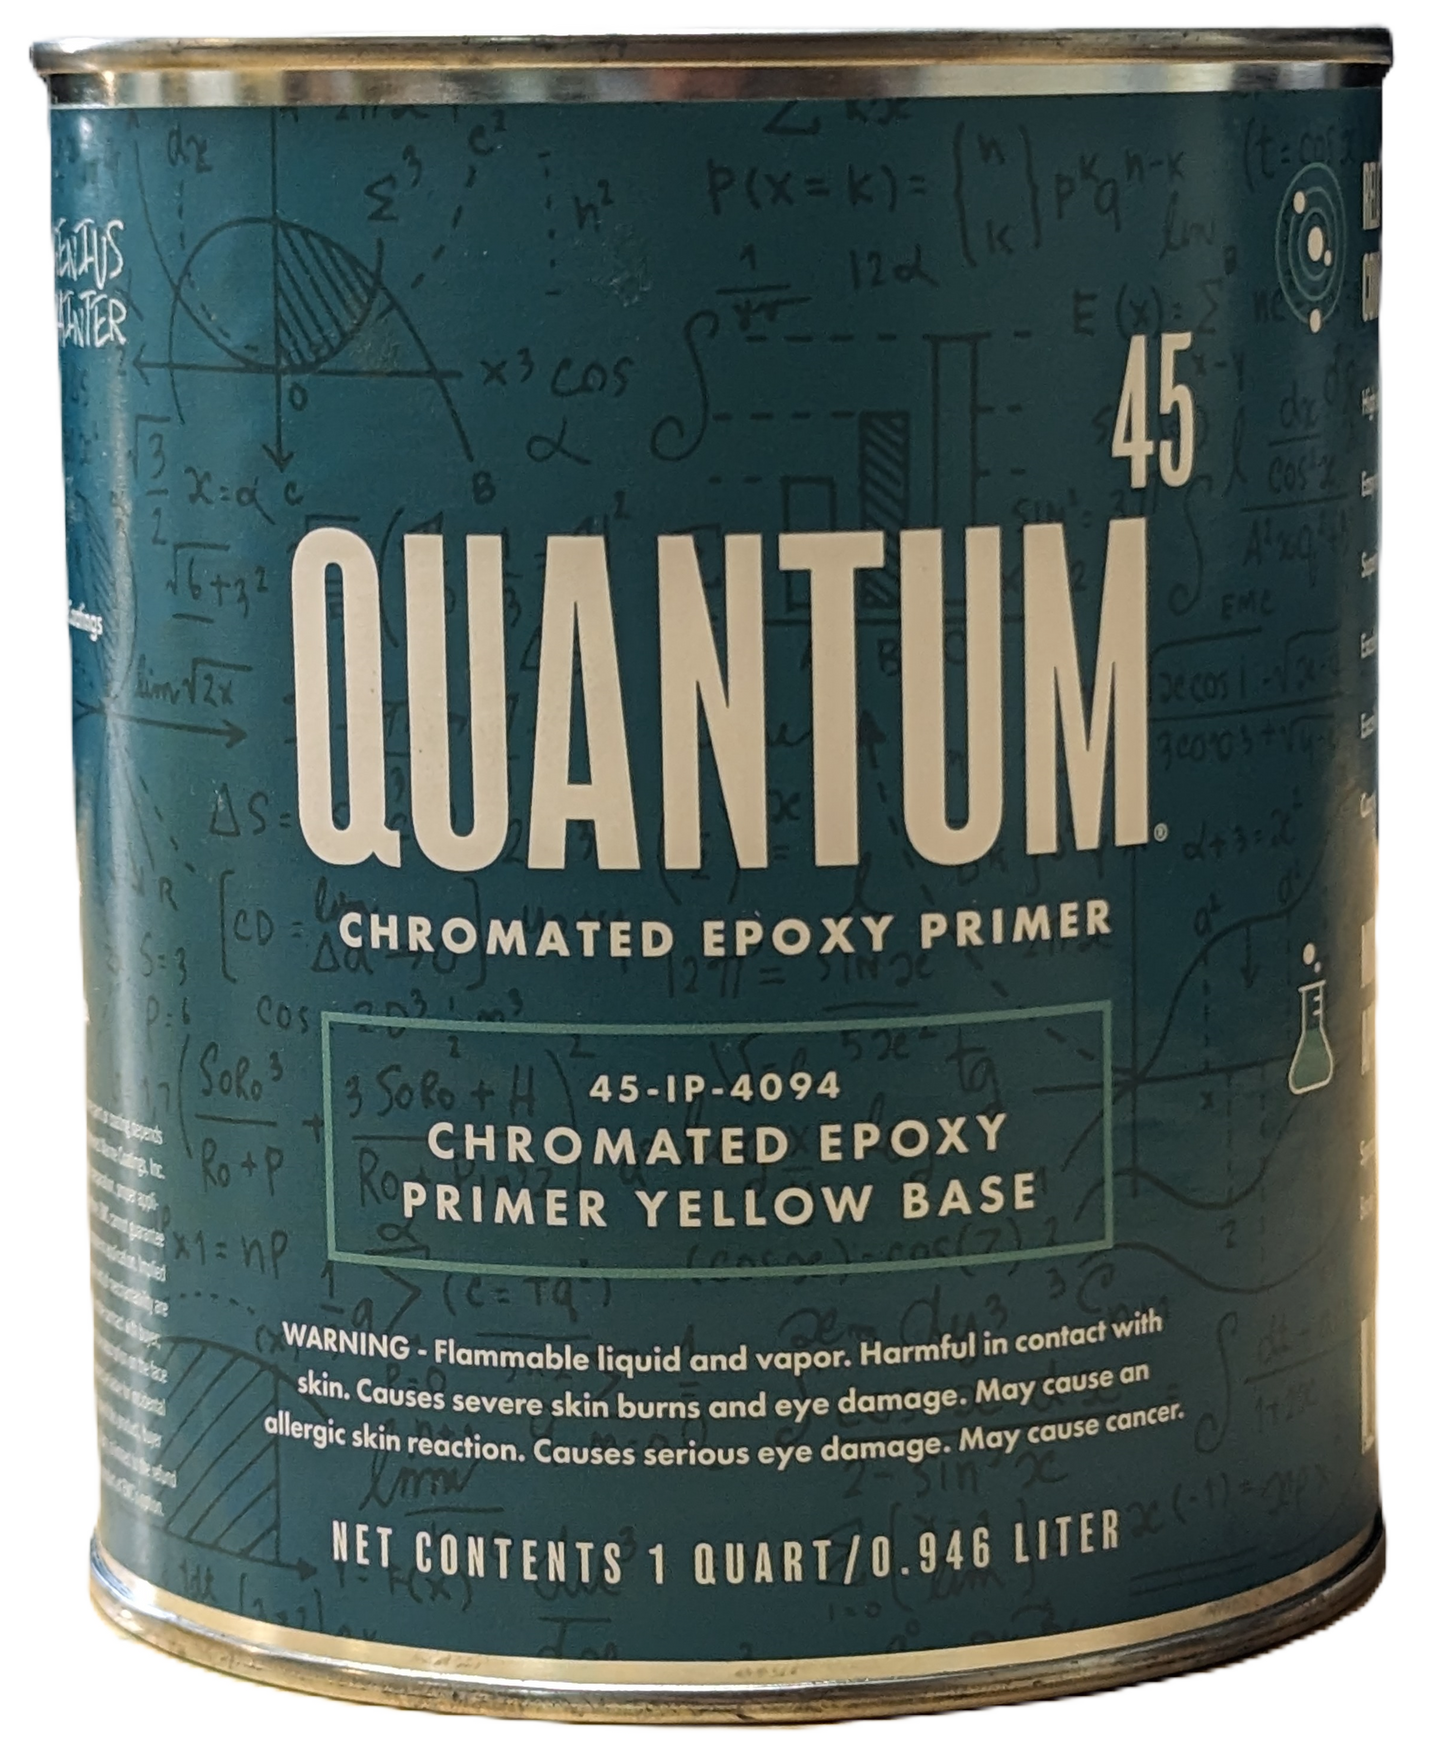 QUANTUM 45 Strontium Chromated Epoxy Primer Base